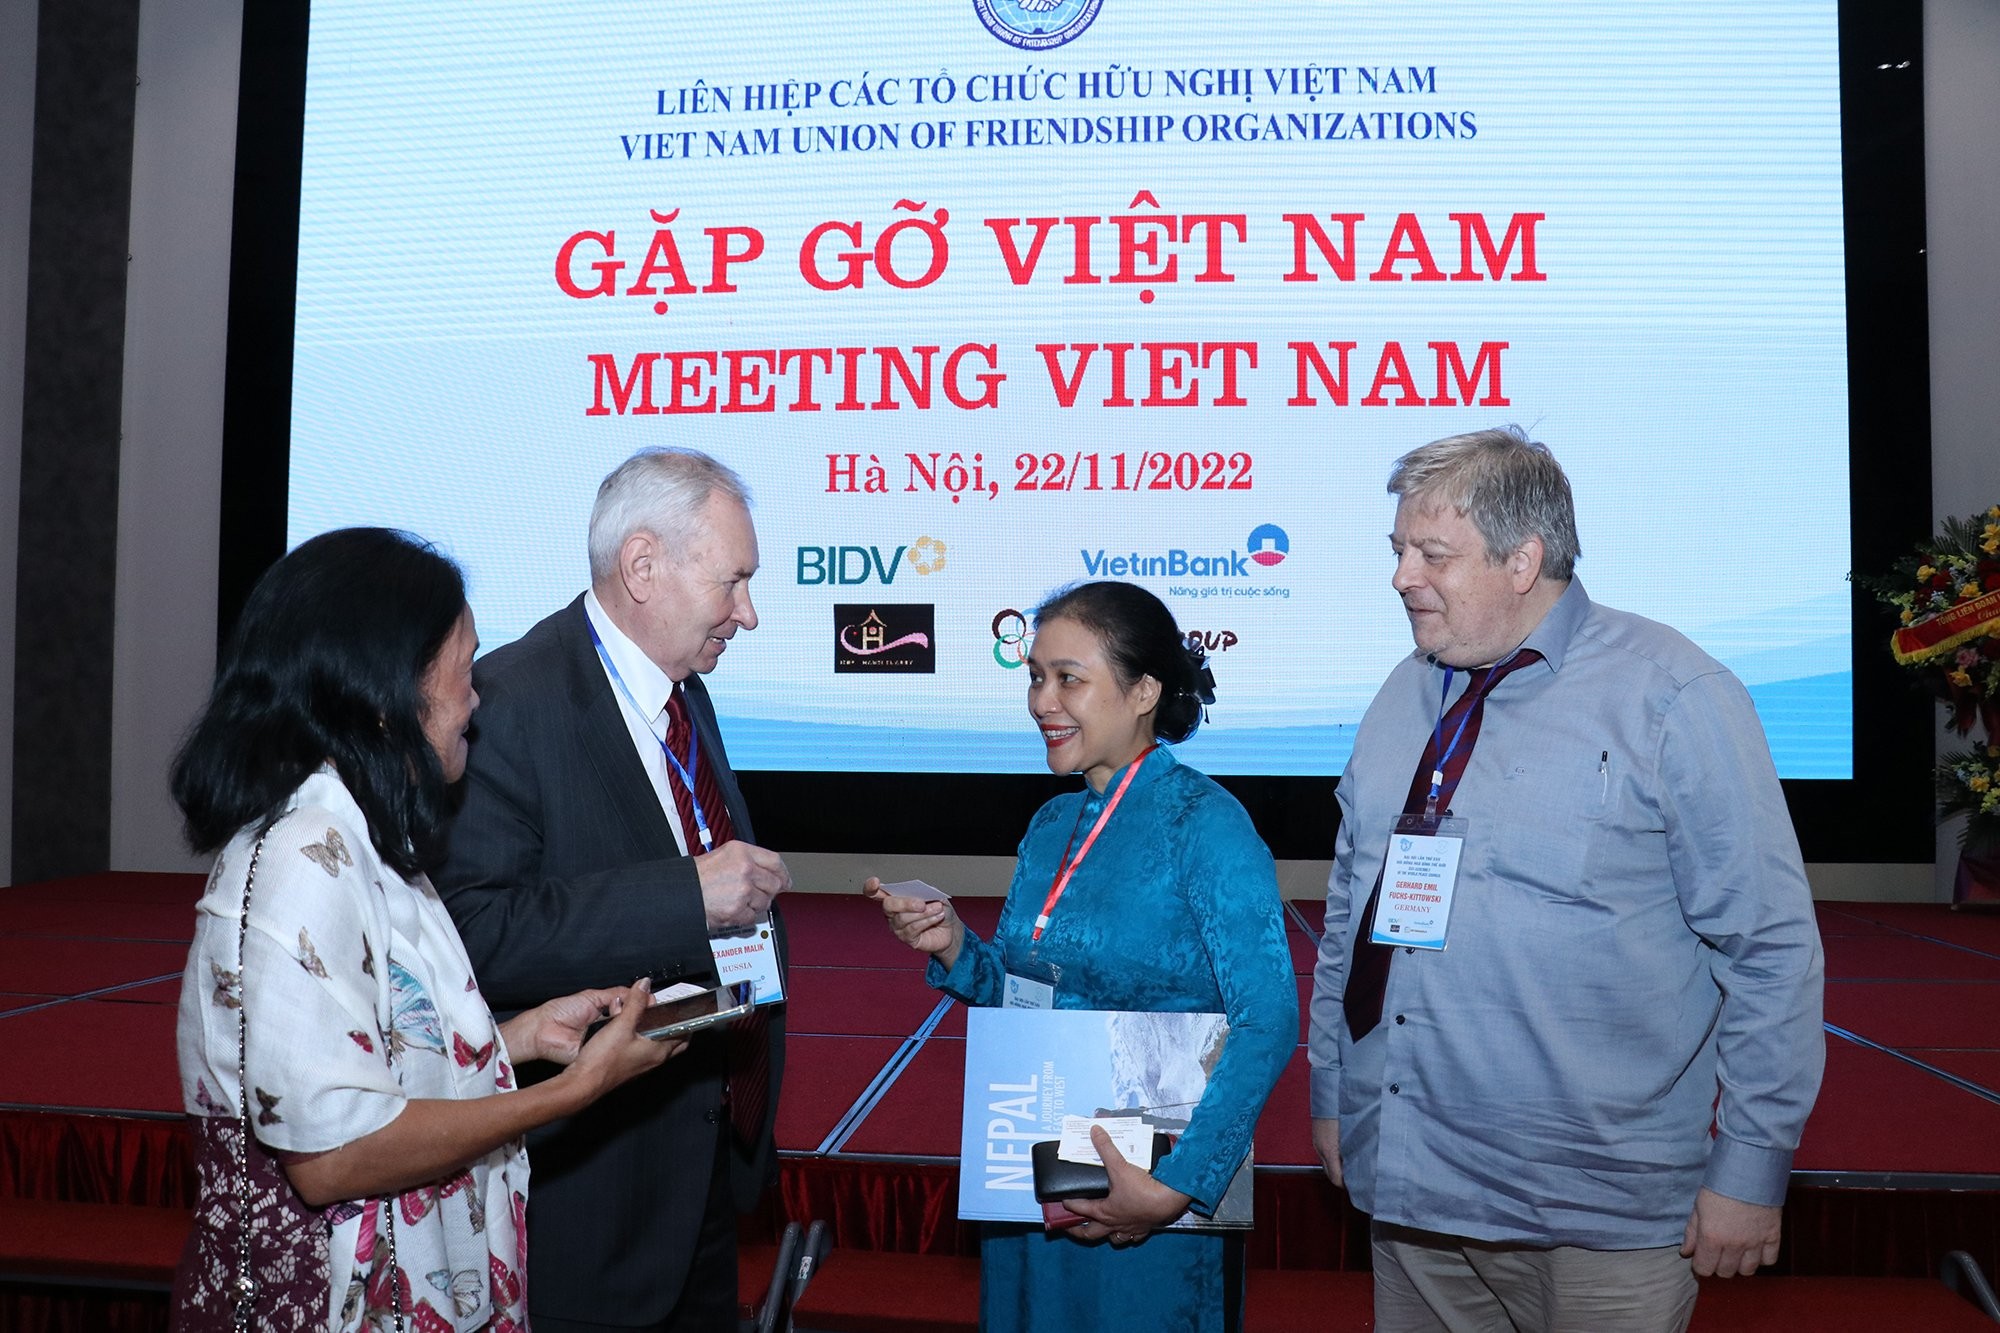 Gặp gỡ Việt Nam: Trao đổi cởi mở, tin cậy về tình hình Việt Nam